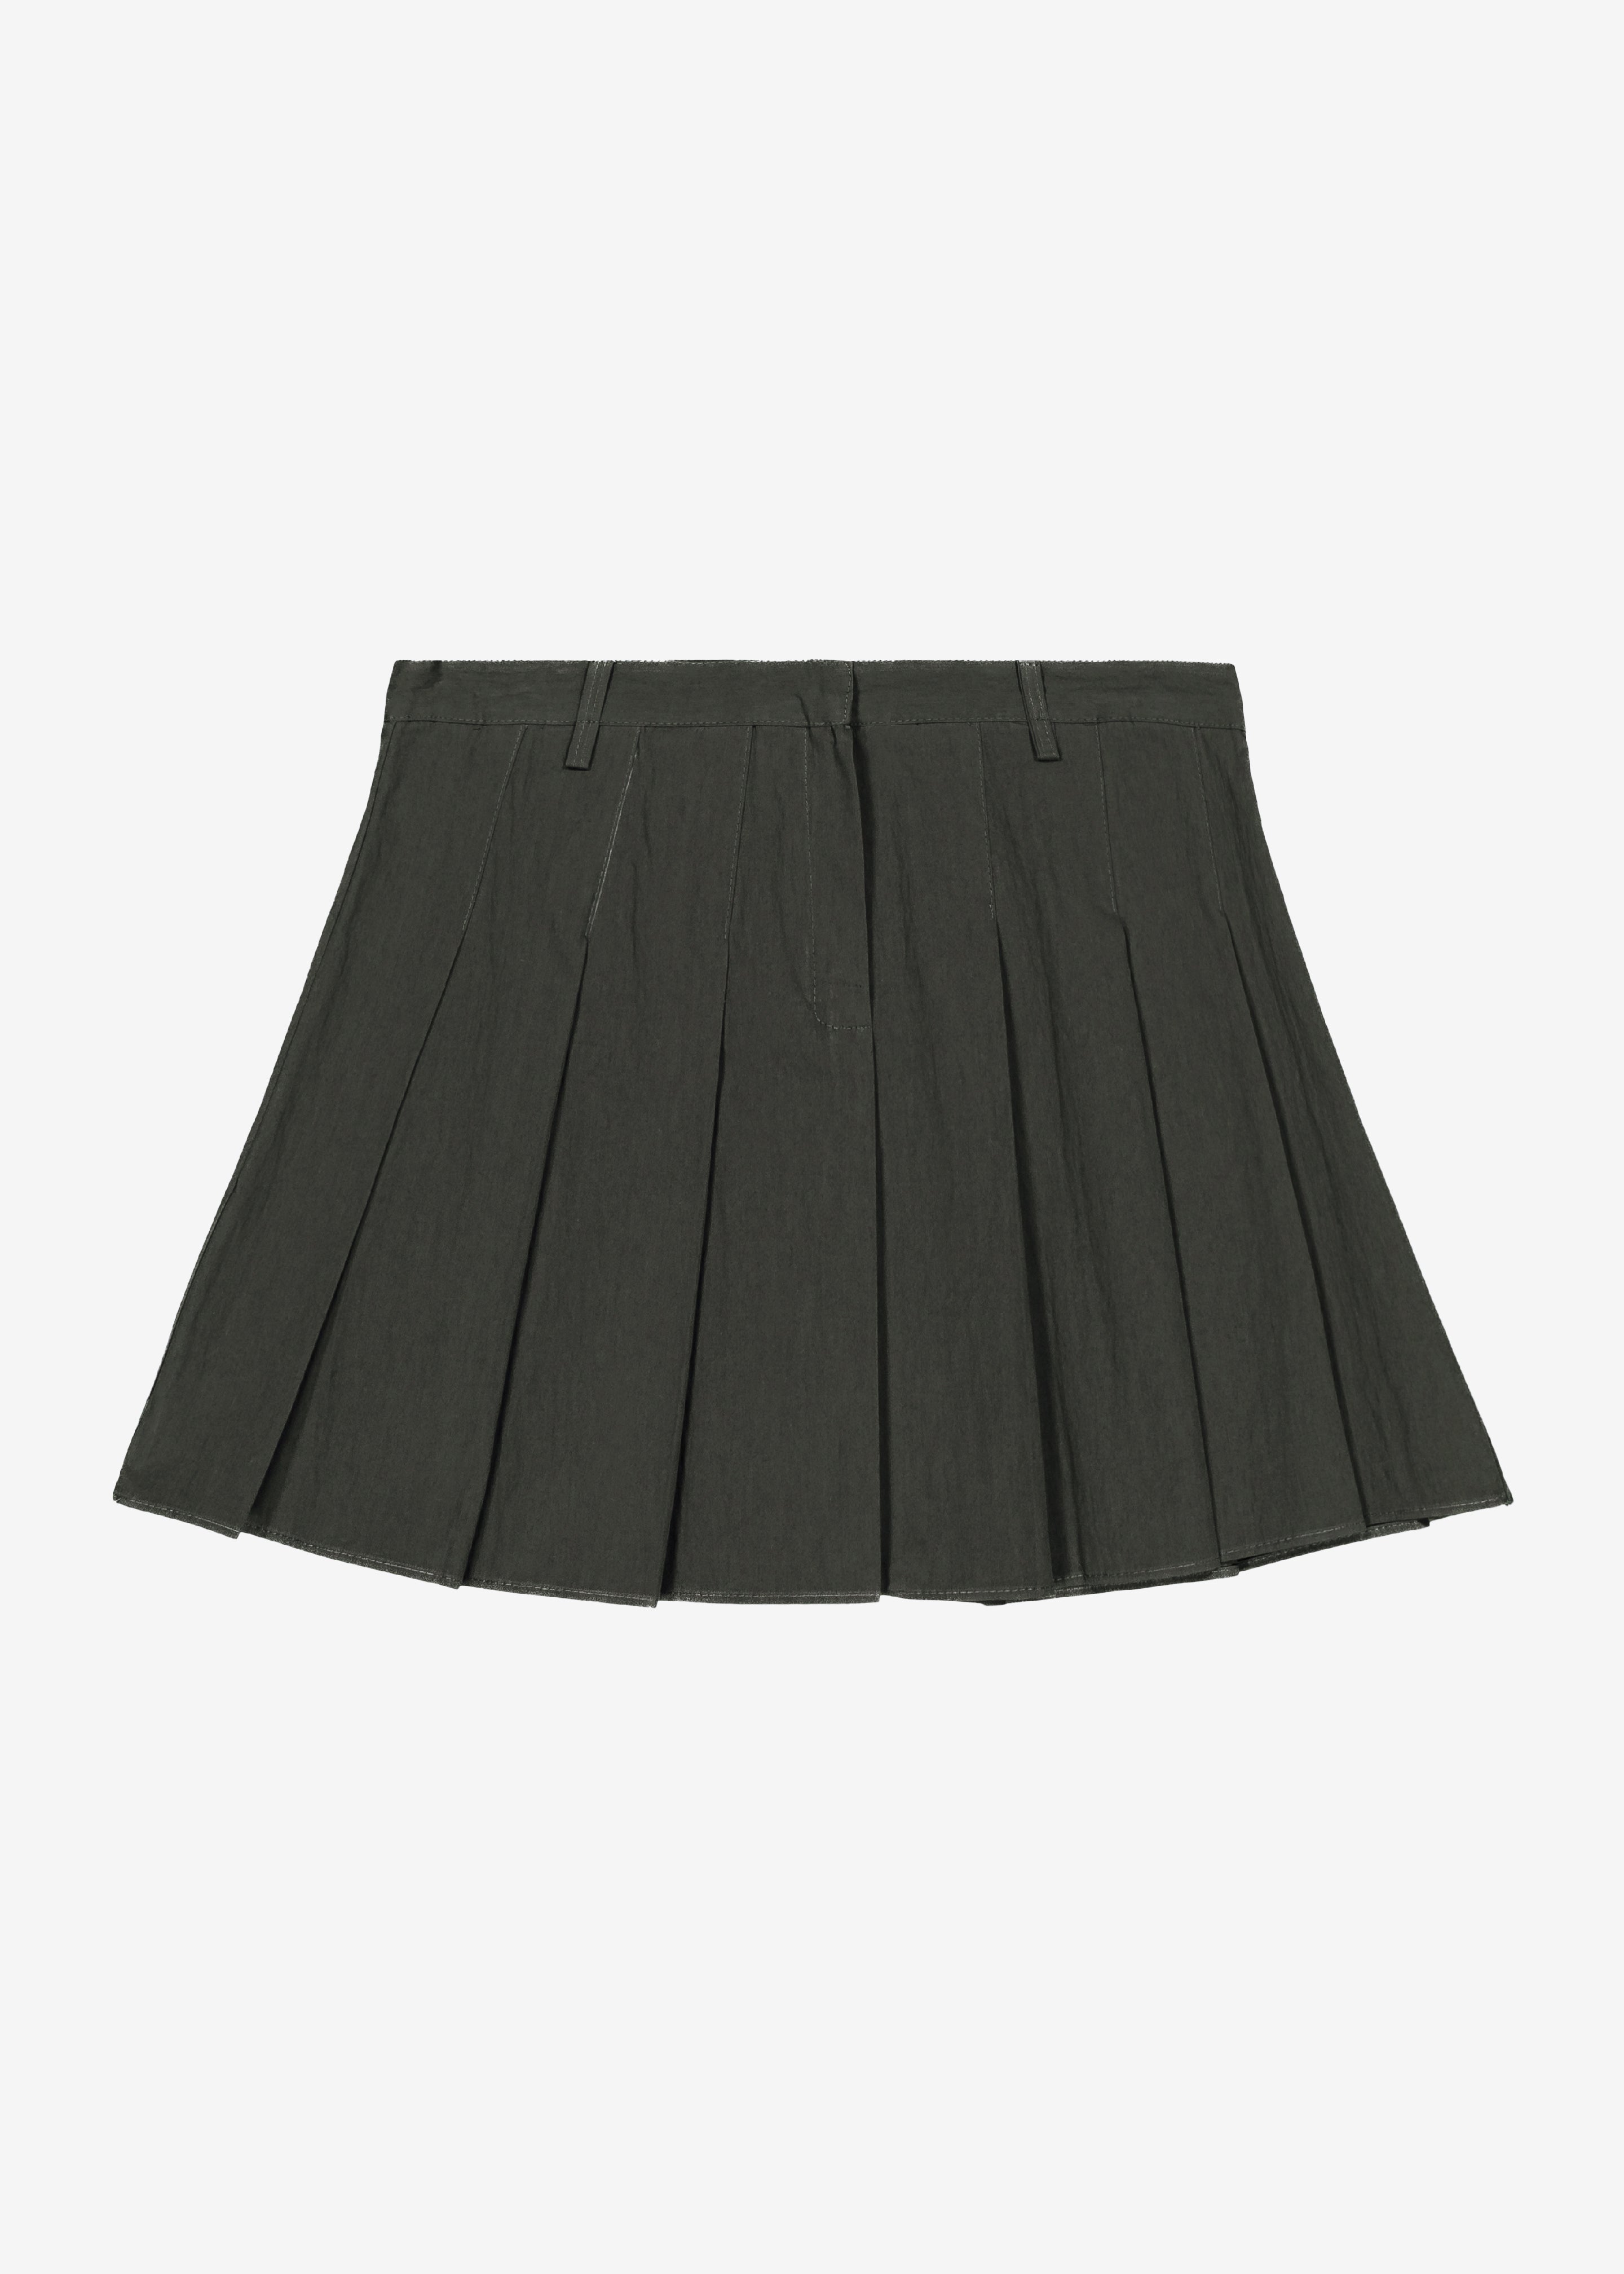 Rachael Pleated Mini Skirt - Charcoal - 8